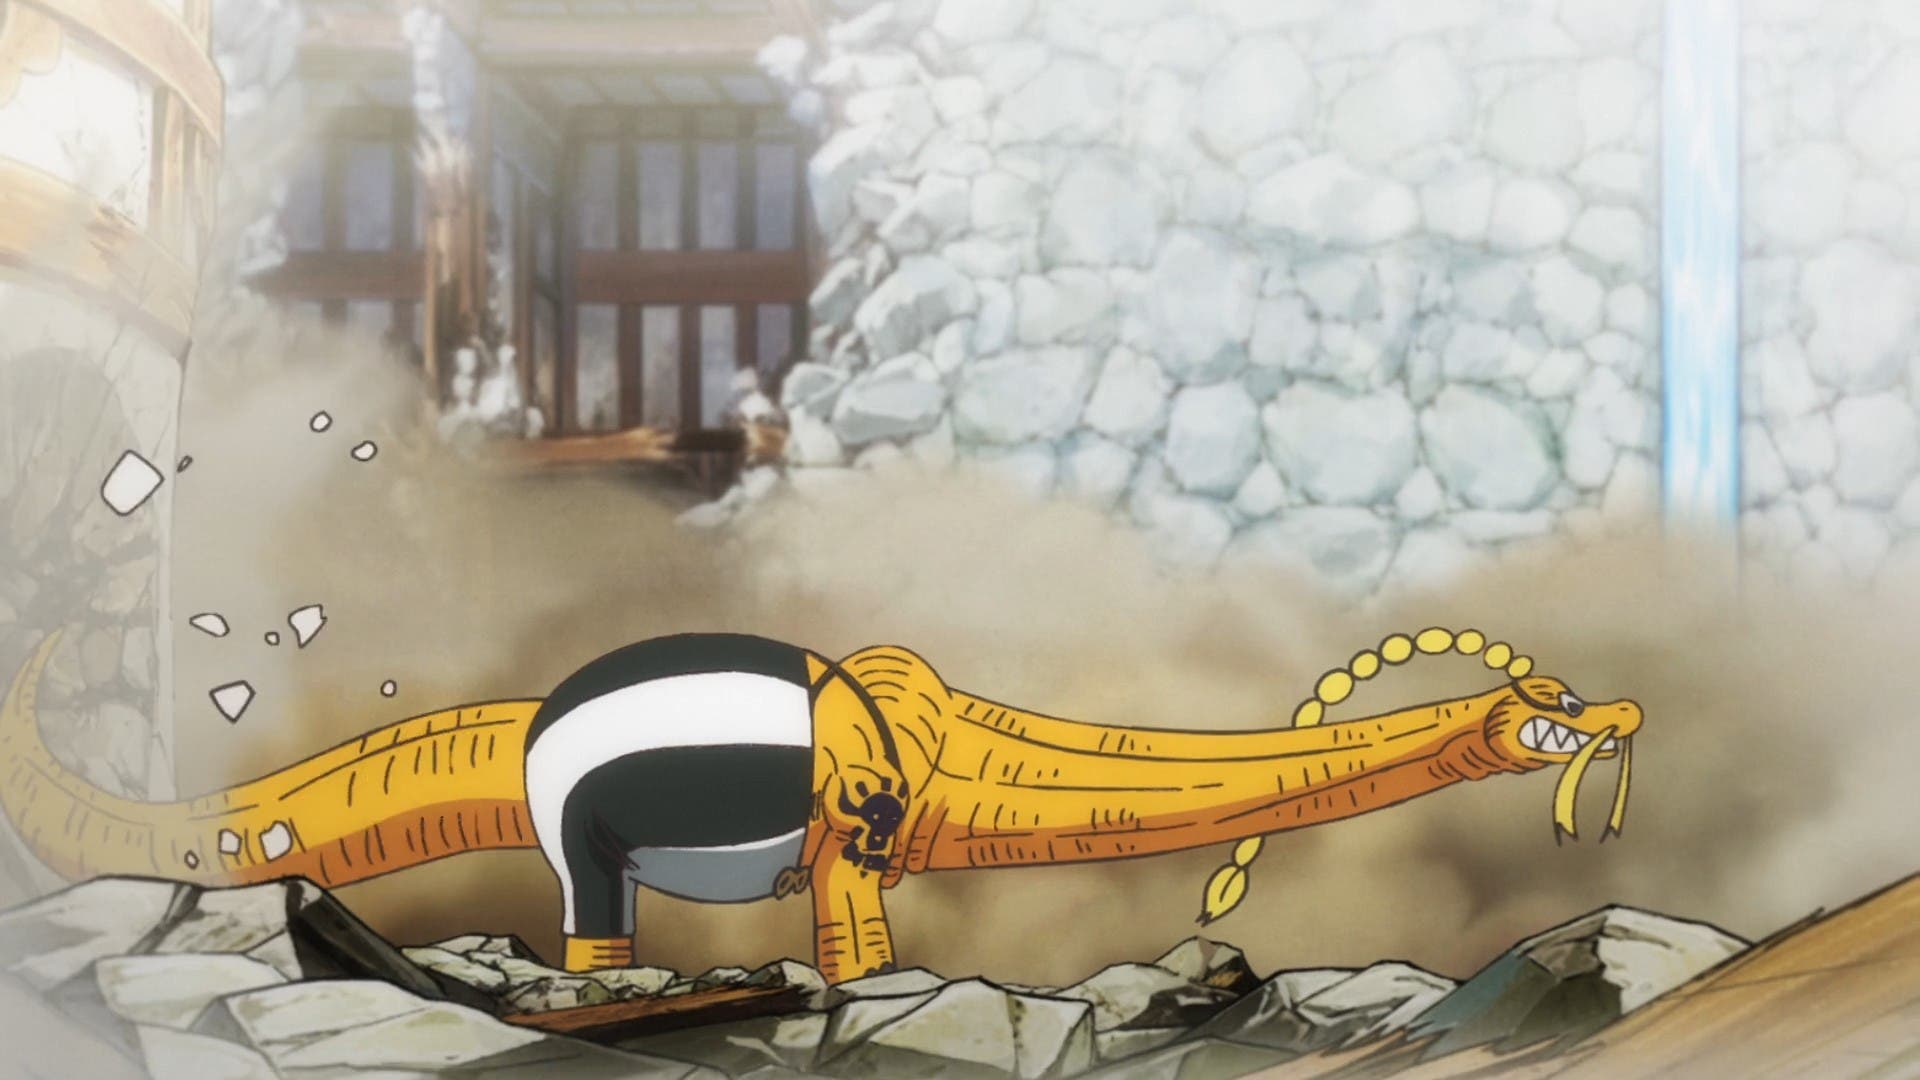 One Piece' capítulo 1057 del anime: dónde y a qué hora se puede ver online